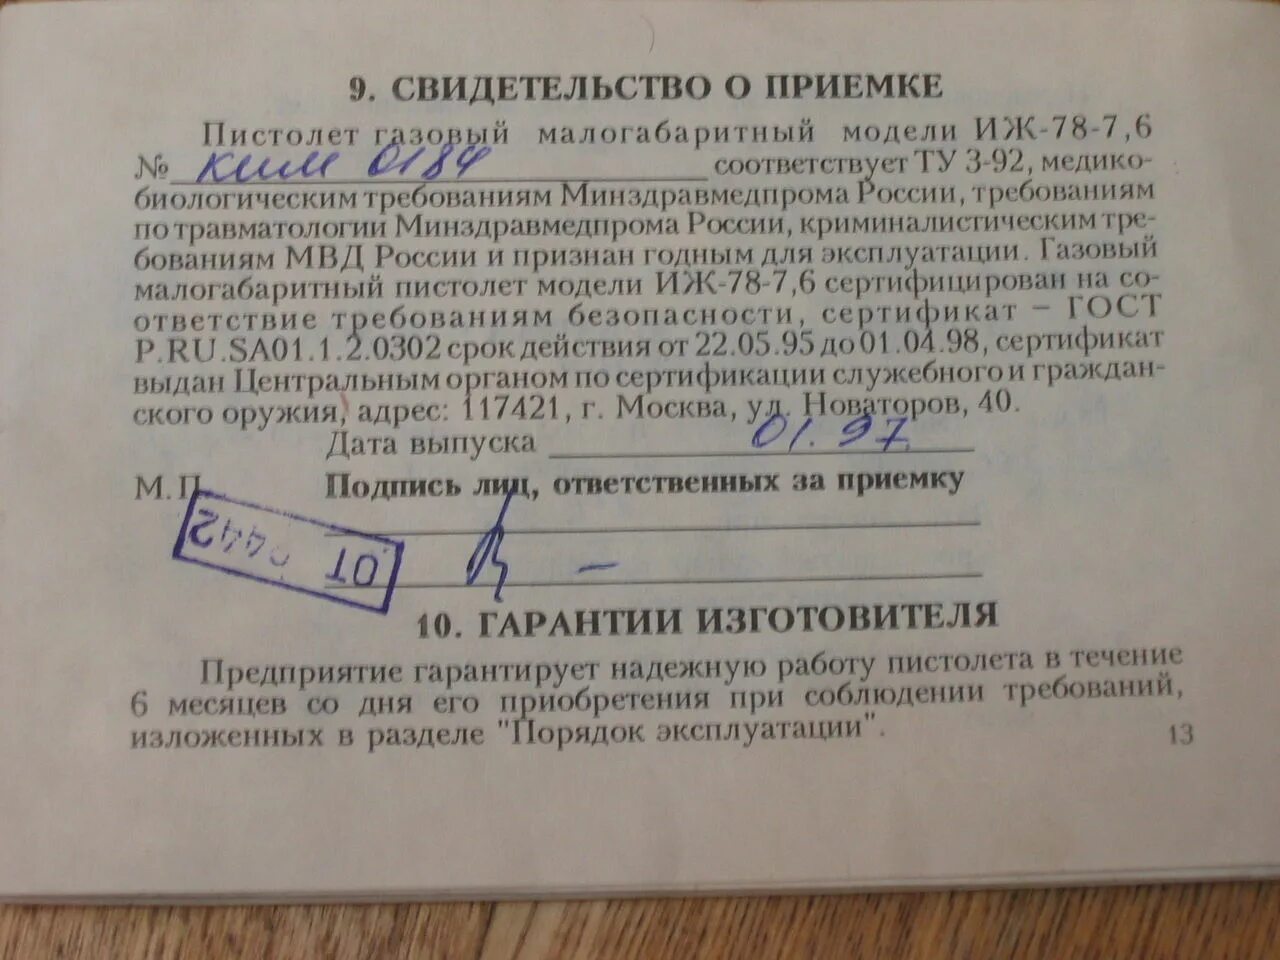 18 18 7 78. Минздравмедпрома. Газовый патрон 7.62 истек срок годности.